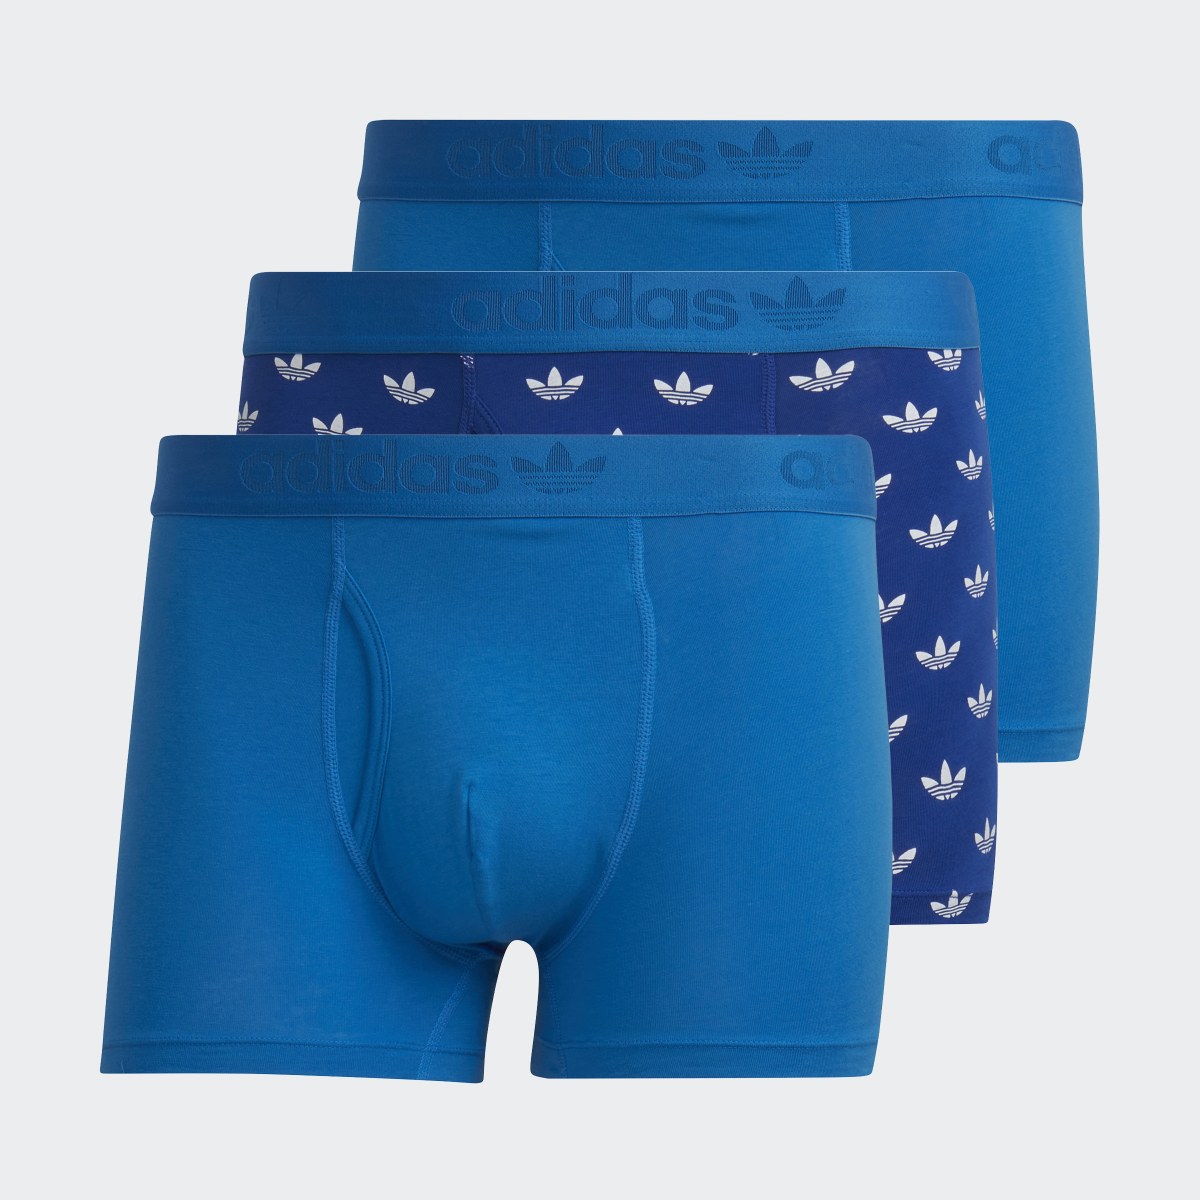 Adidas Boxers de Algodão Comfort Flex – 3 pares. 5